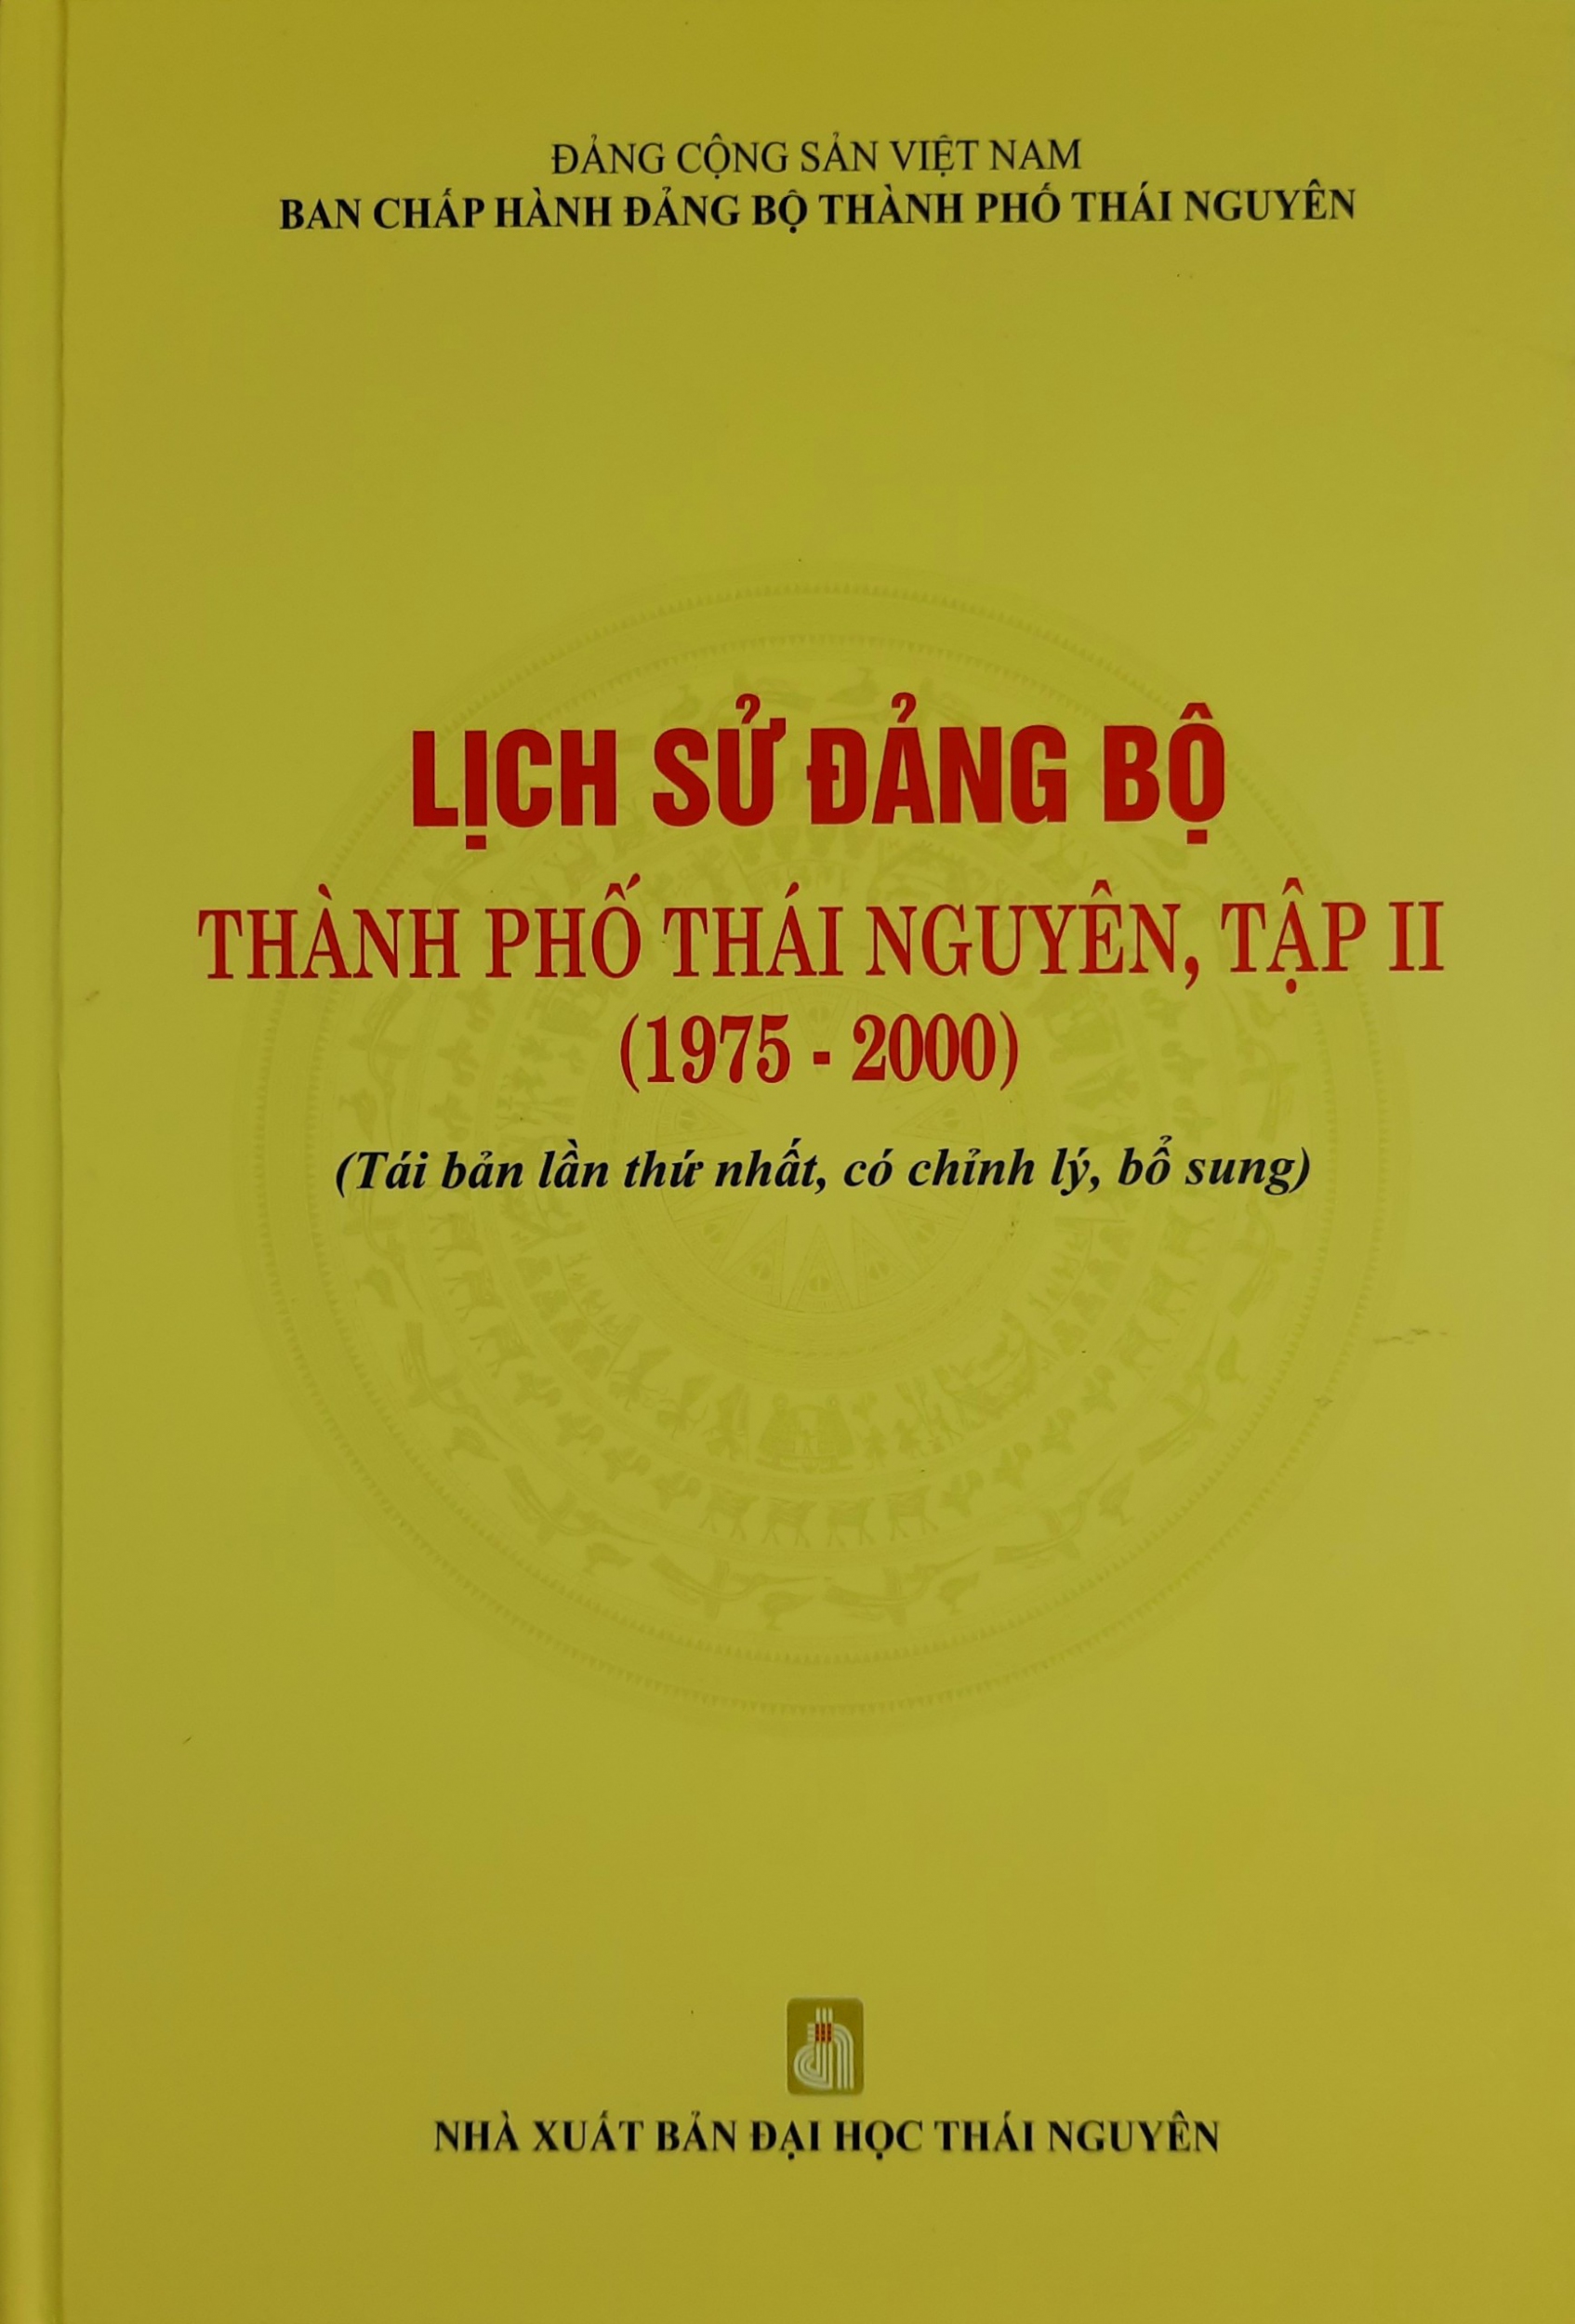 Lịch sử Đảng bộ thành phố Thái Nguyên - Tập II (1975 - 2000)